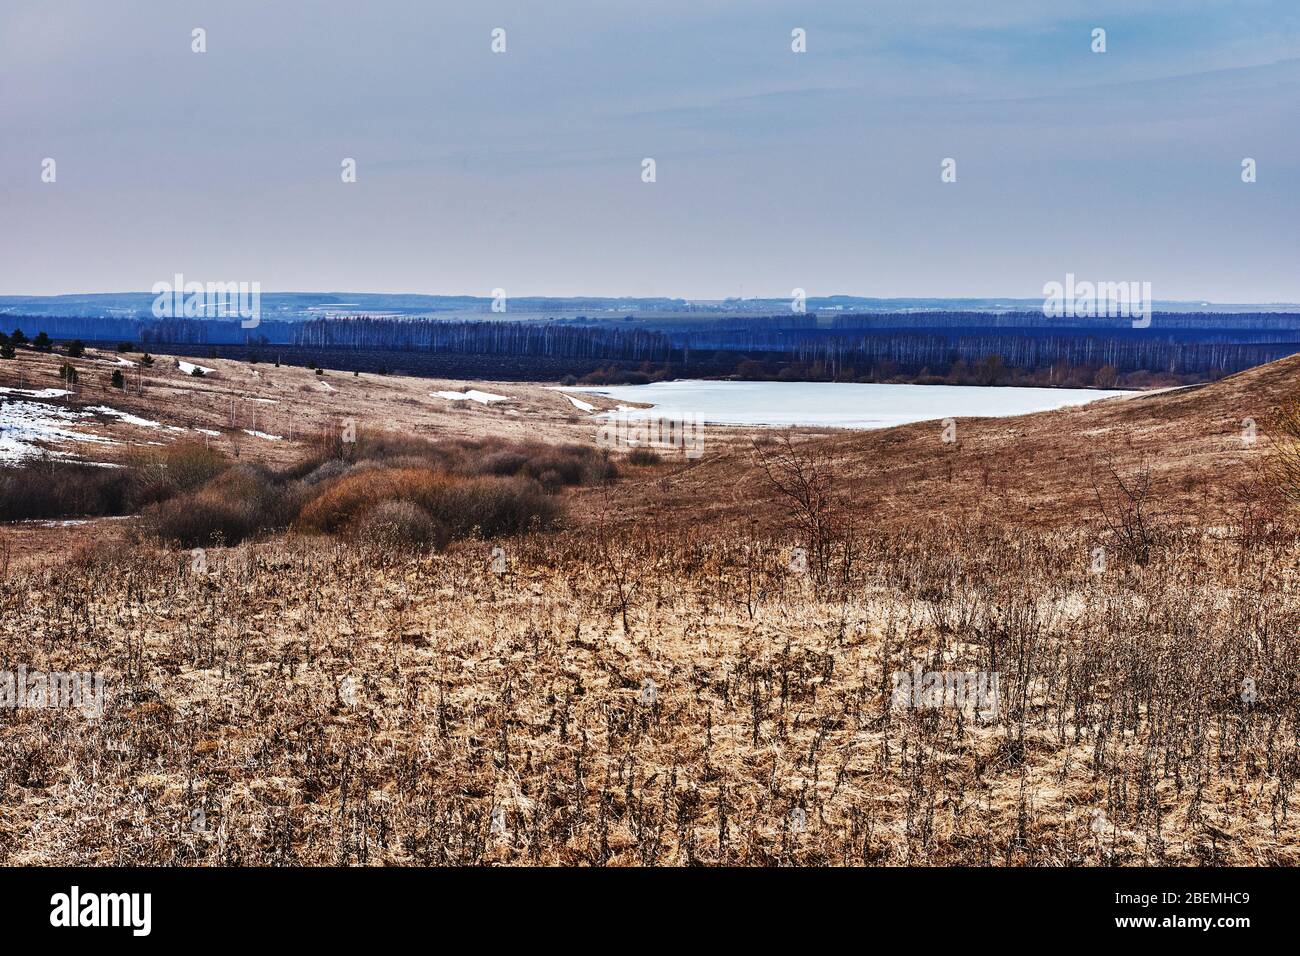 Frühlingslandschaft russischer Natur. Felder, Wälder, Hügel, Ebene, offene Sicht und Horizont, der Himmel verbindet sich mit der Erde. Russland, das Dorf Boldino Stockfoto